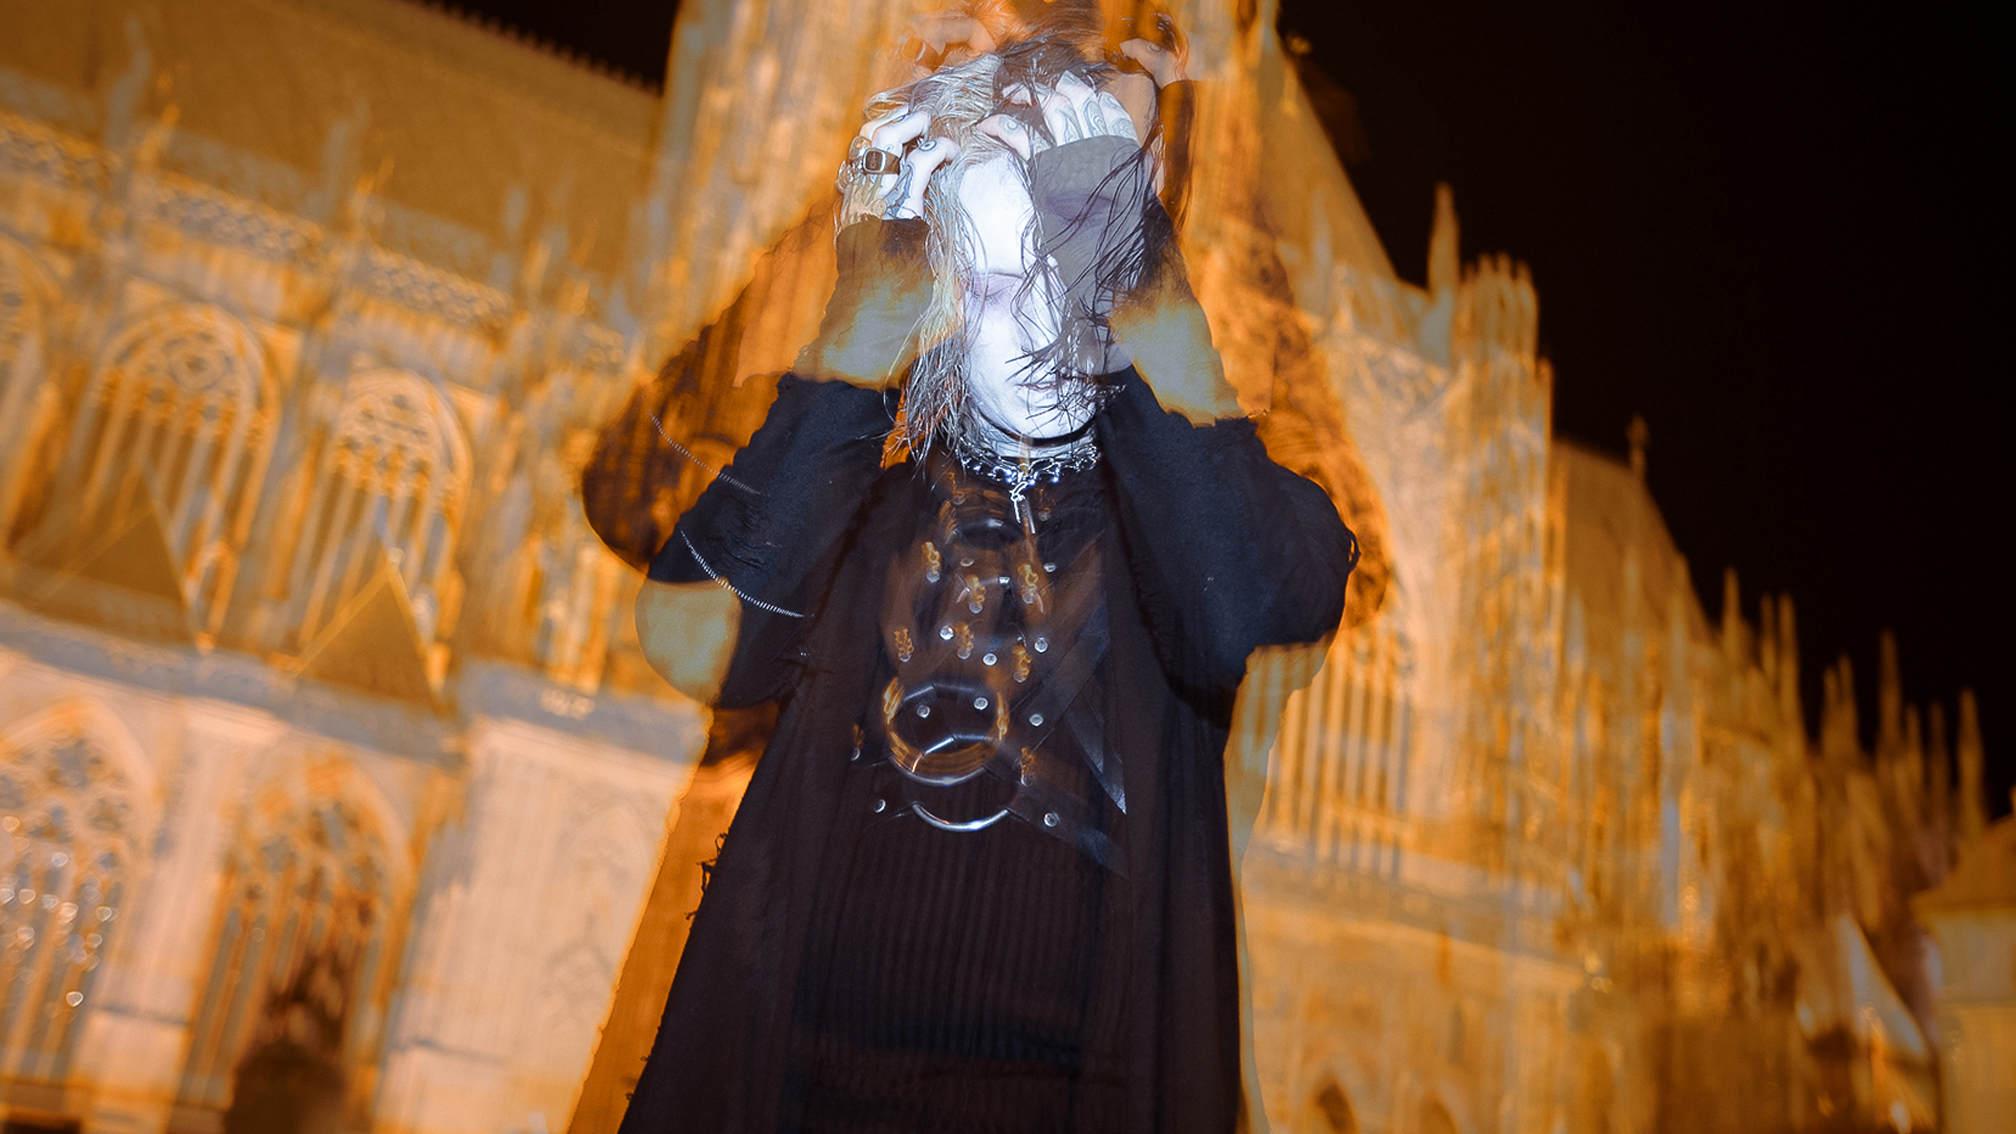 Ghostemane: ANTI-ICON Album Review